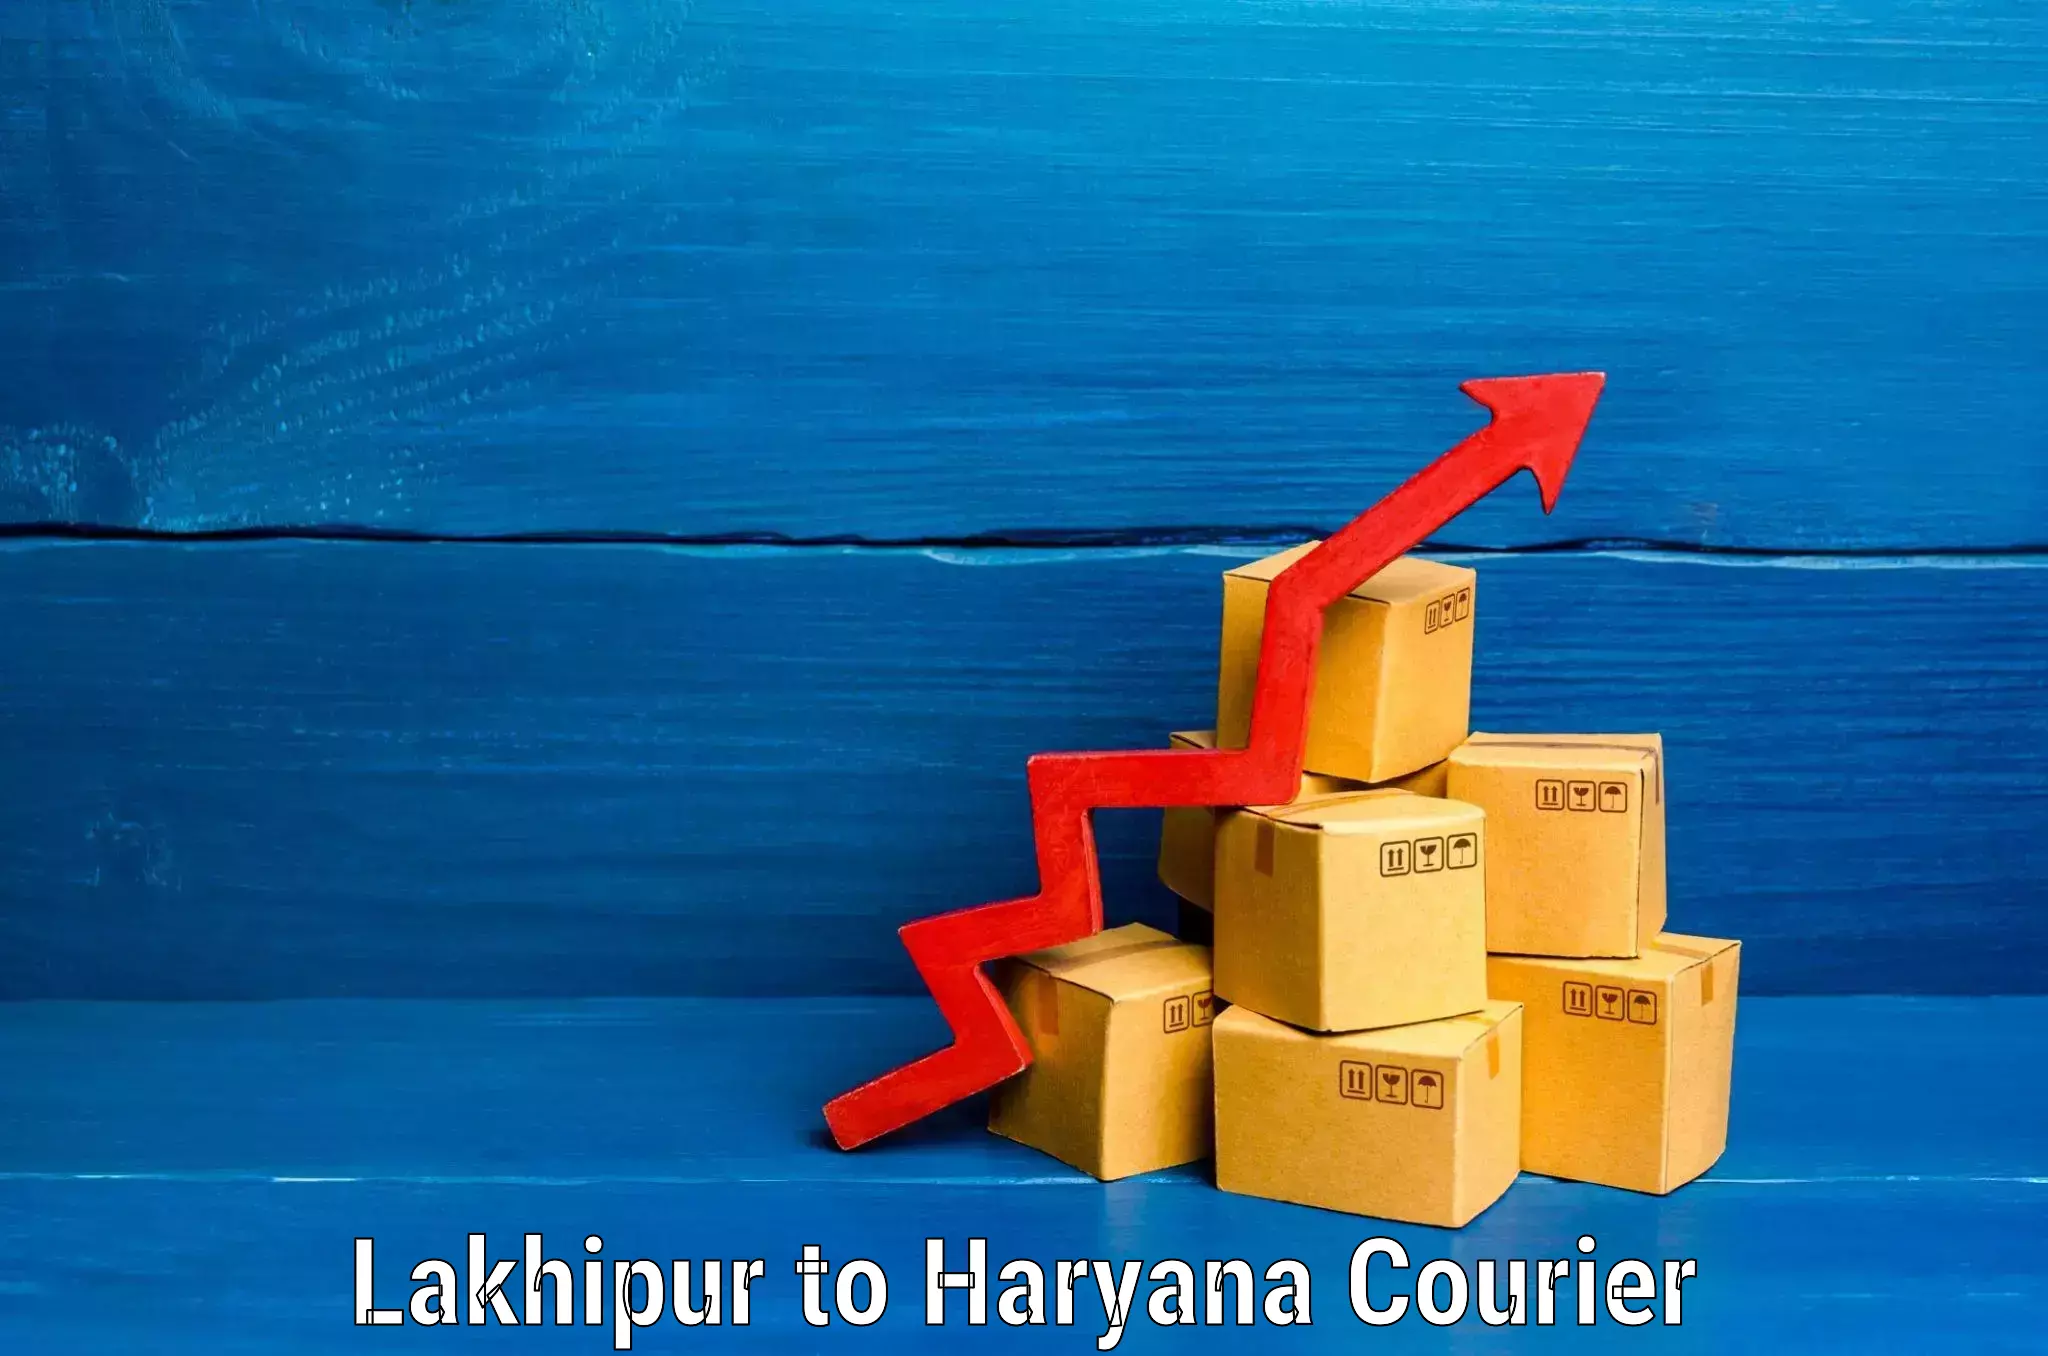 Heavy luggage shipping Lakhipur to Gurgaon